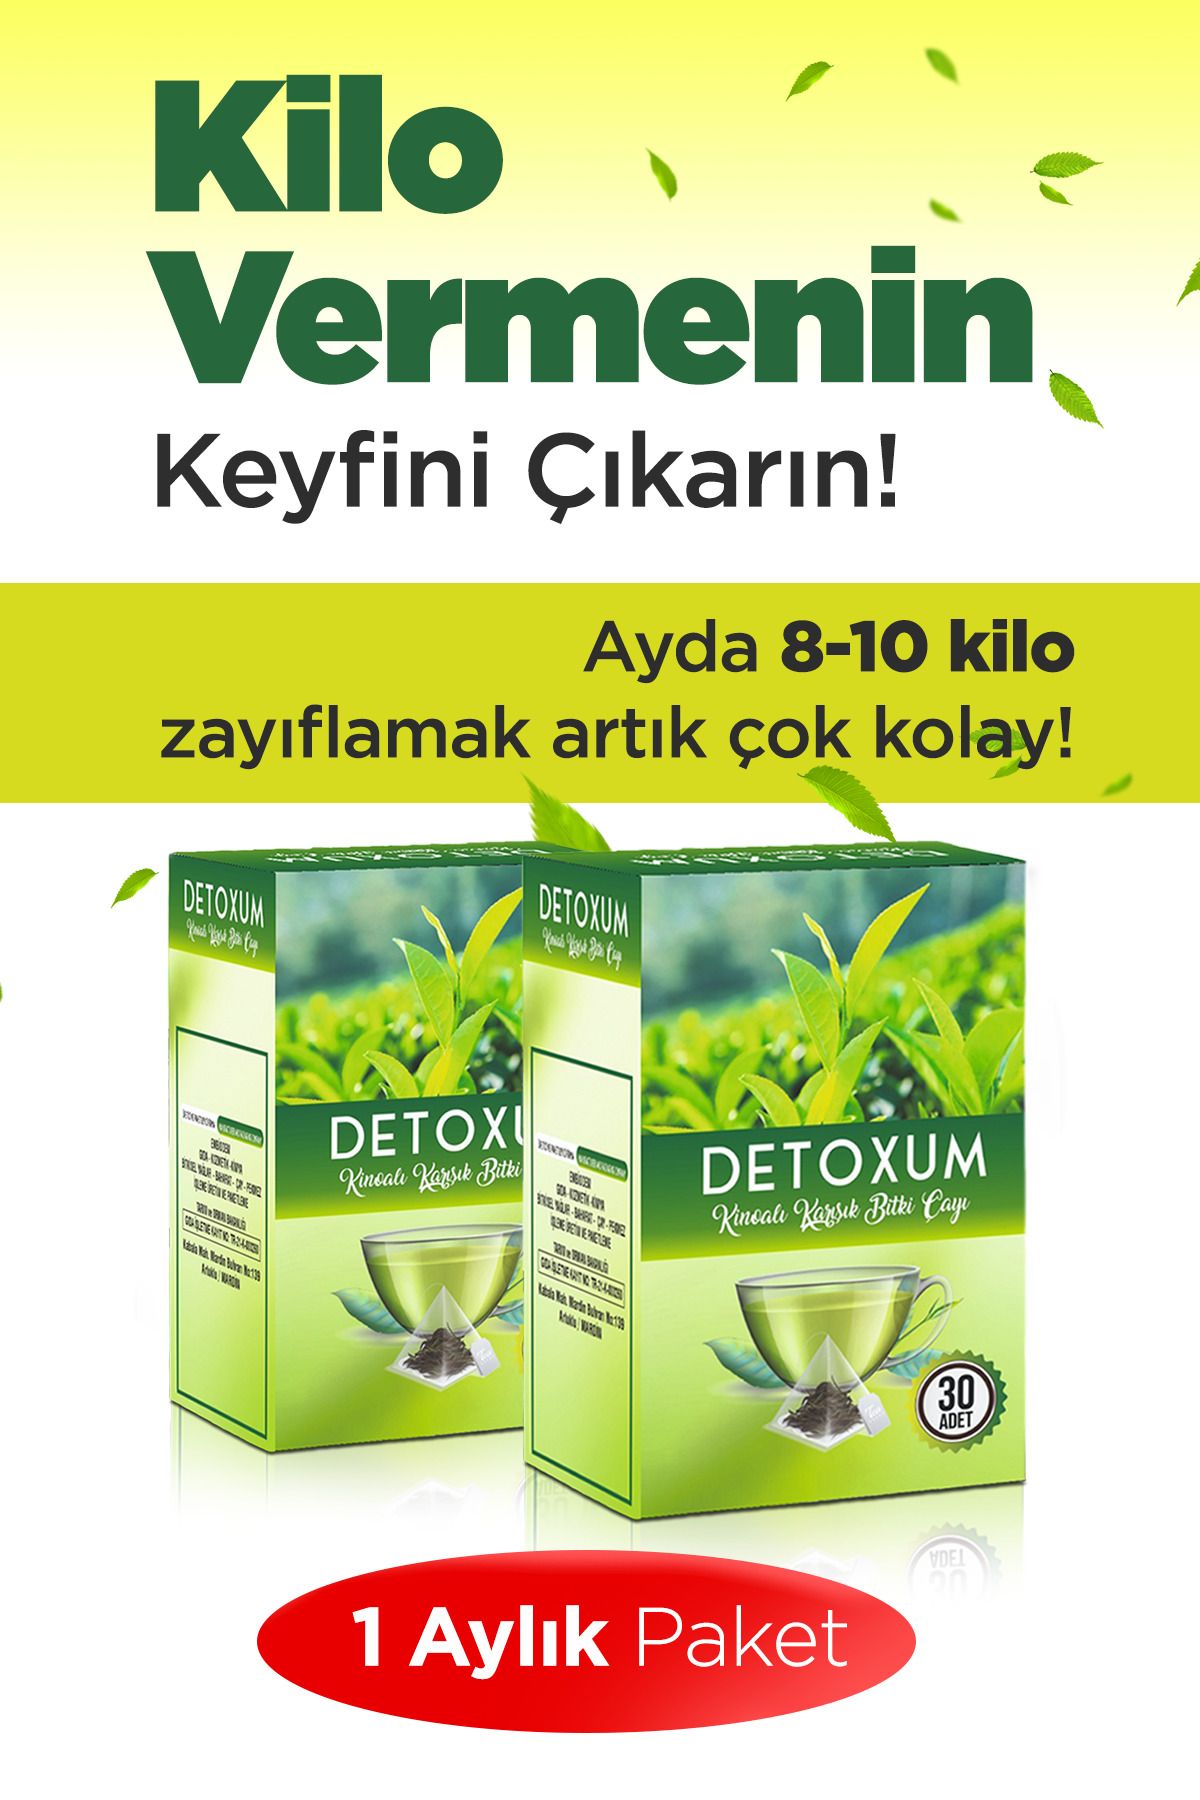 Detoxum Zayıflama Destekleyici Form Çayı Kilo Vermeye Yardımcı Detox Çayı ( 2 Li Set)